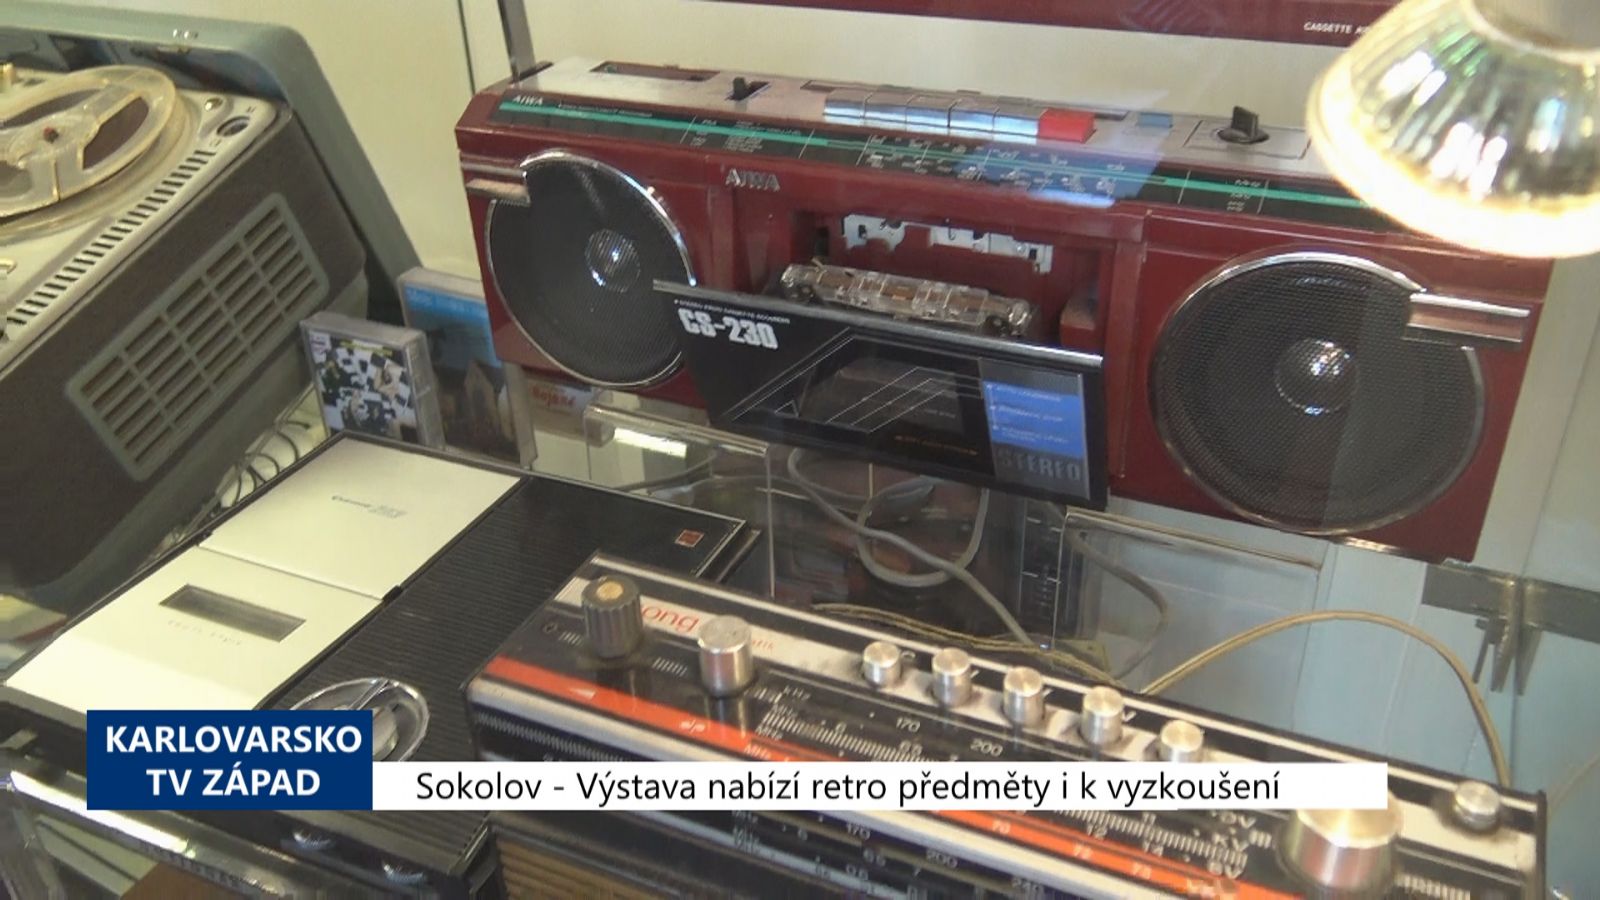 Sokolov: Výstava nabízí retro předměty i k vyzkoušení (TV Západ)